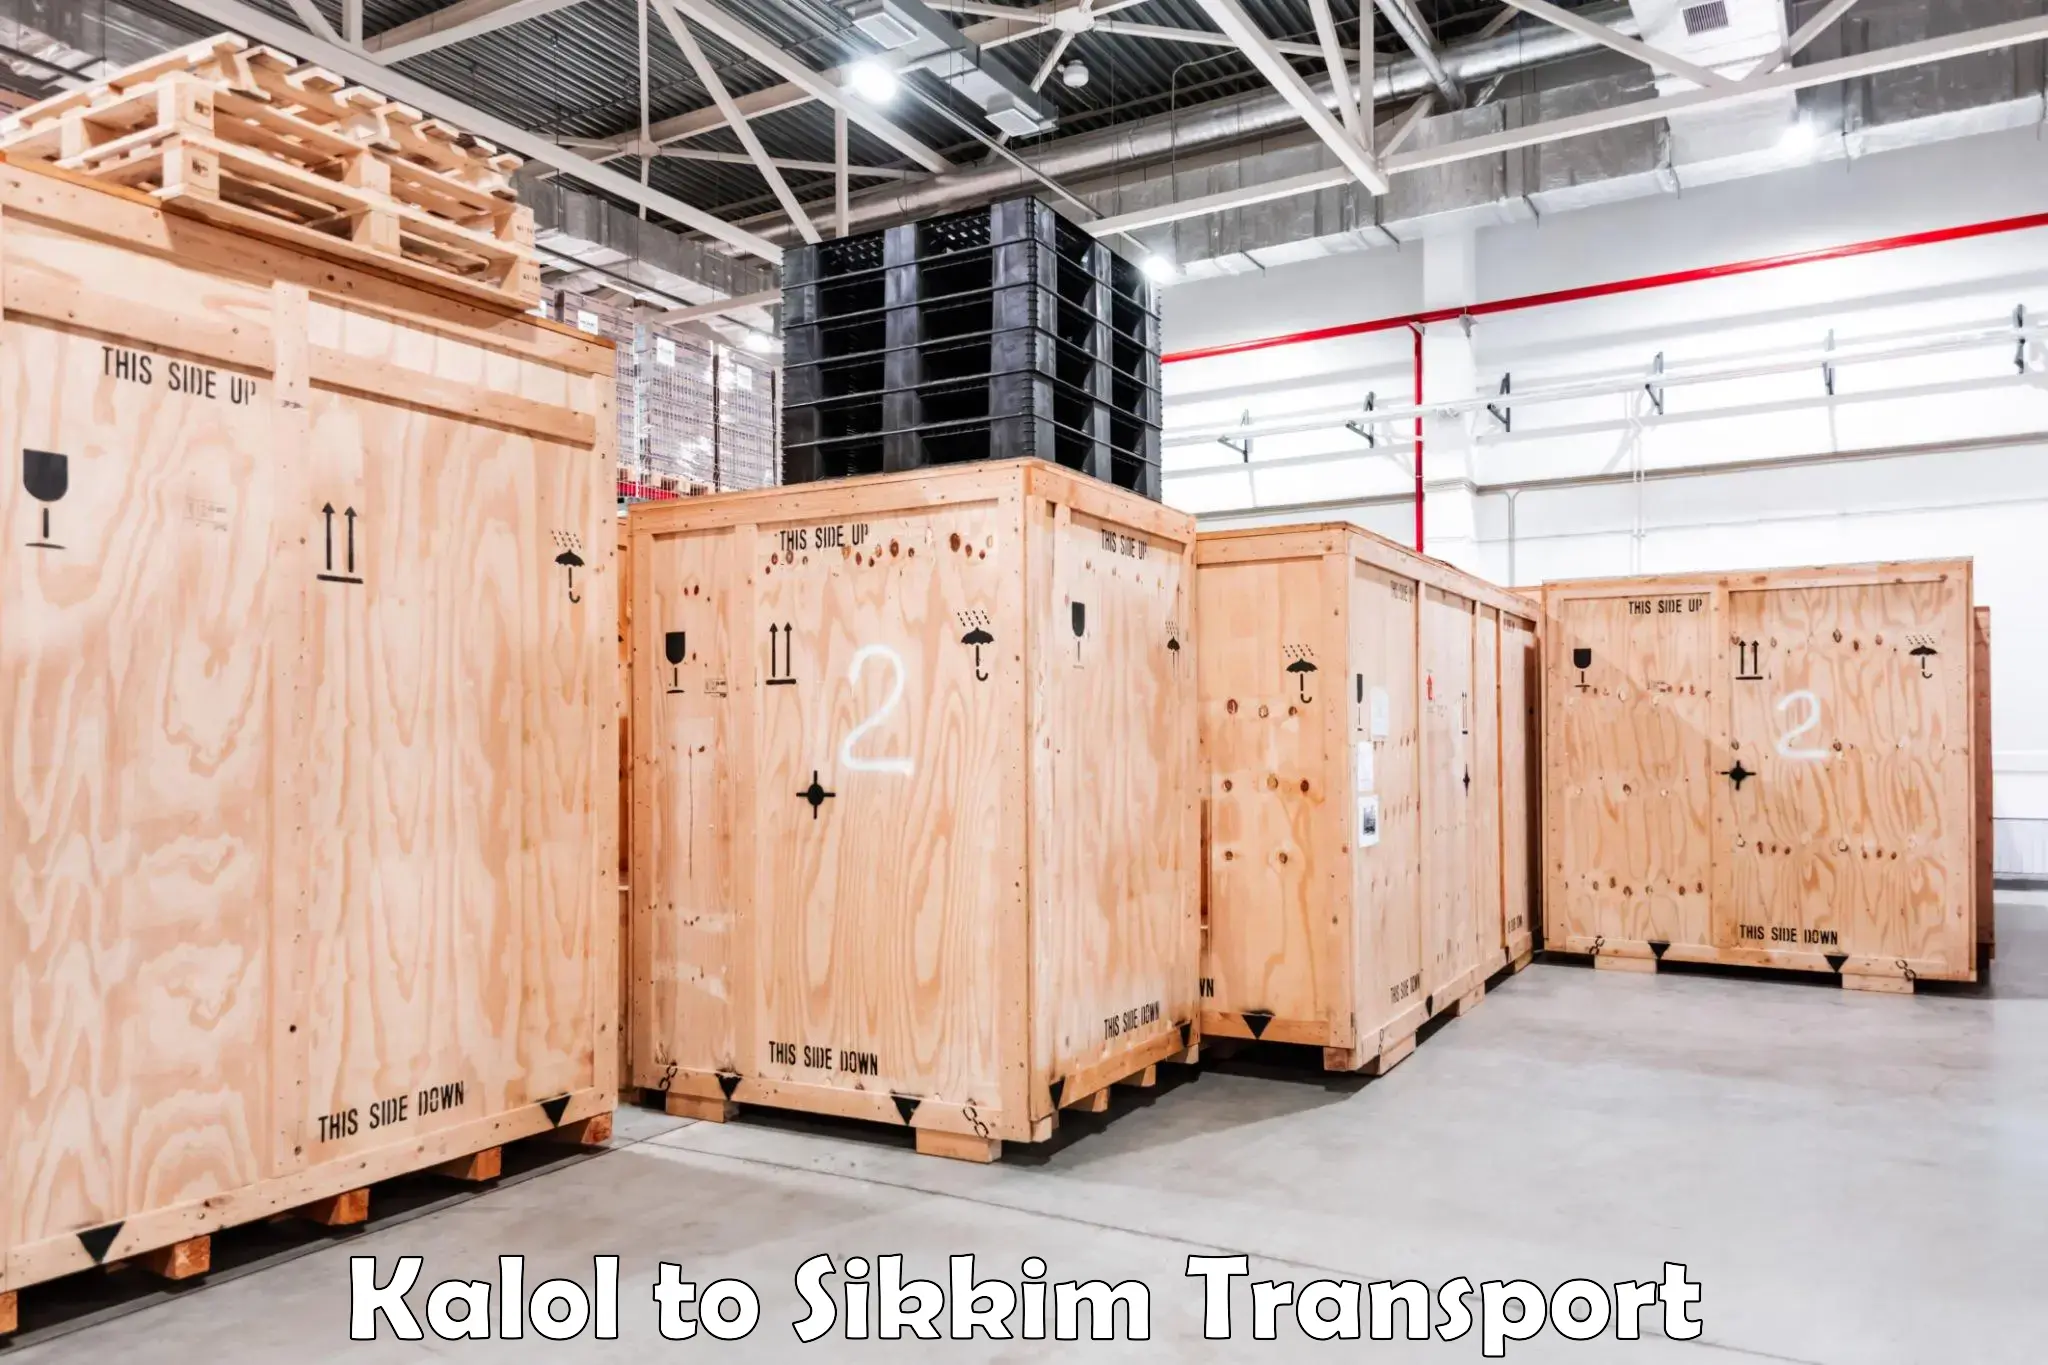 Shipping partner Kalol to Pelling